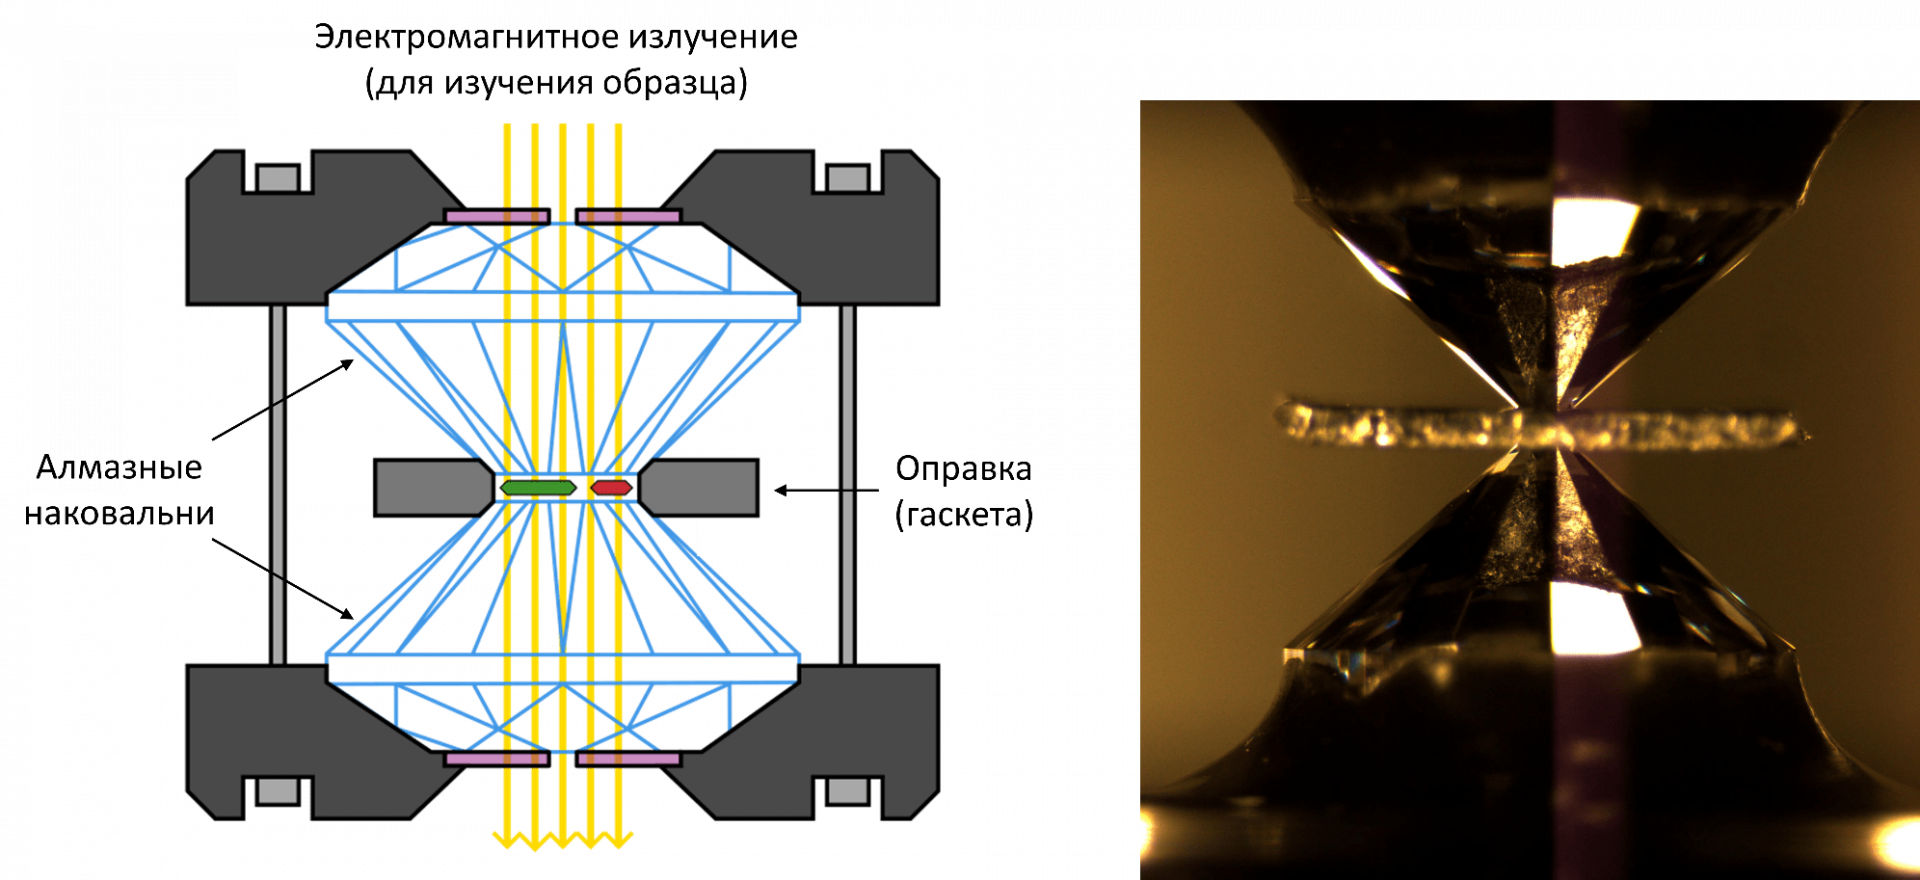 Принципиальная схема ячейки с алмазными наковальнями и фотография ячейки с помещенным внутрь образцом. 